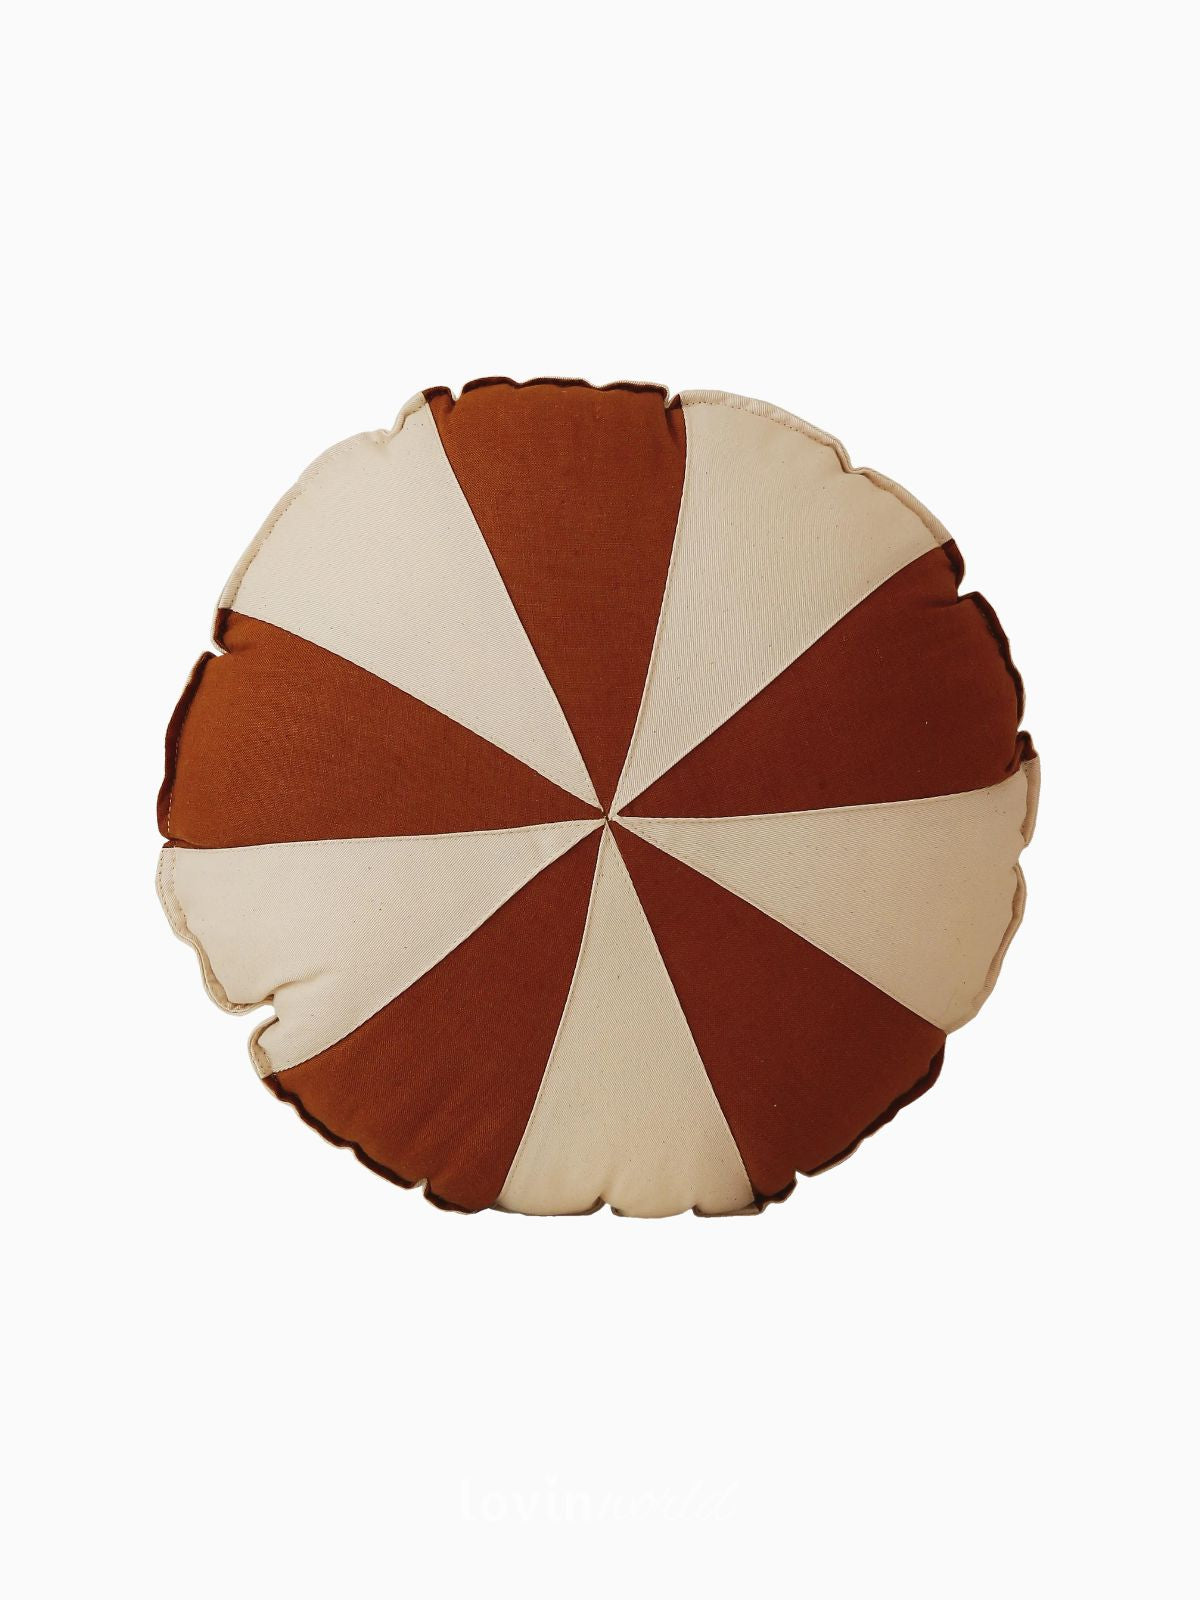 Cuscino Circo 100% lino e cotone in colore marrone e beige 39x39 cm.-1